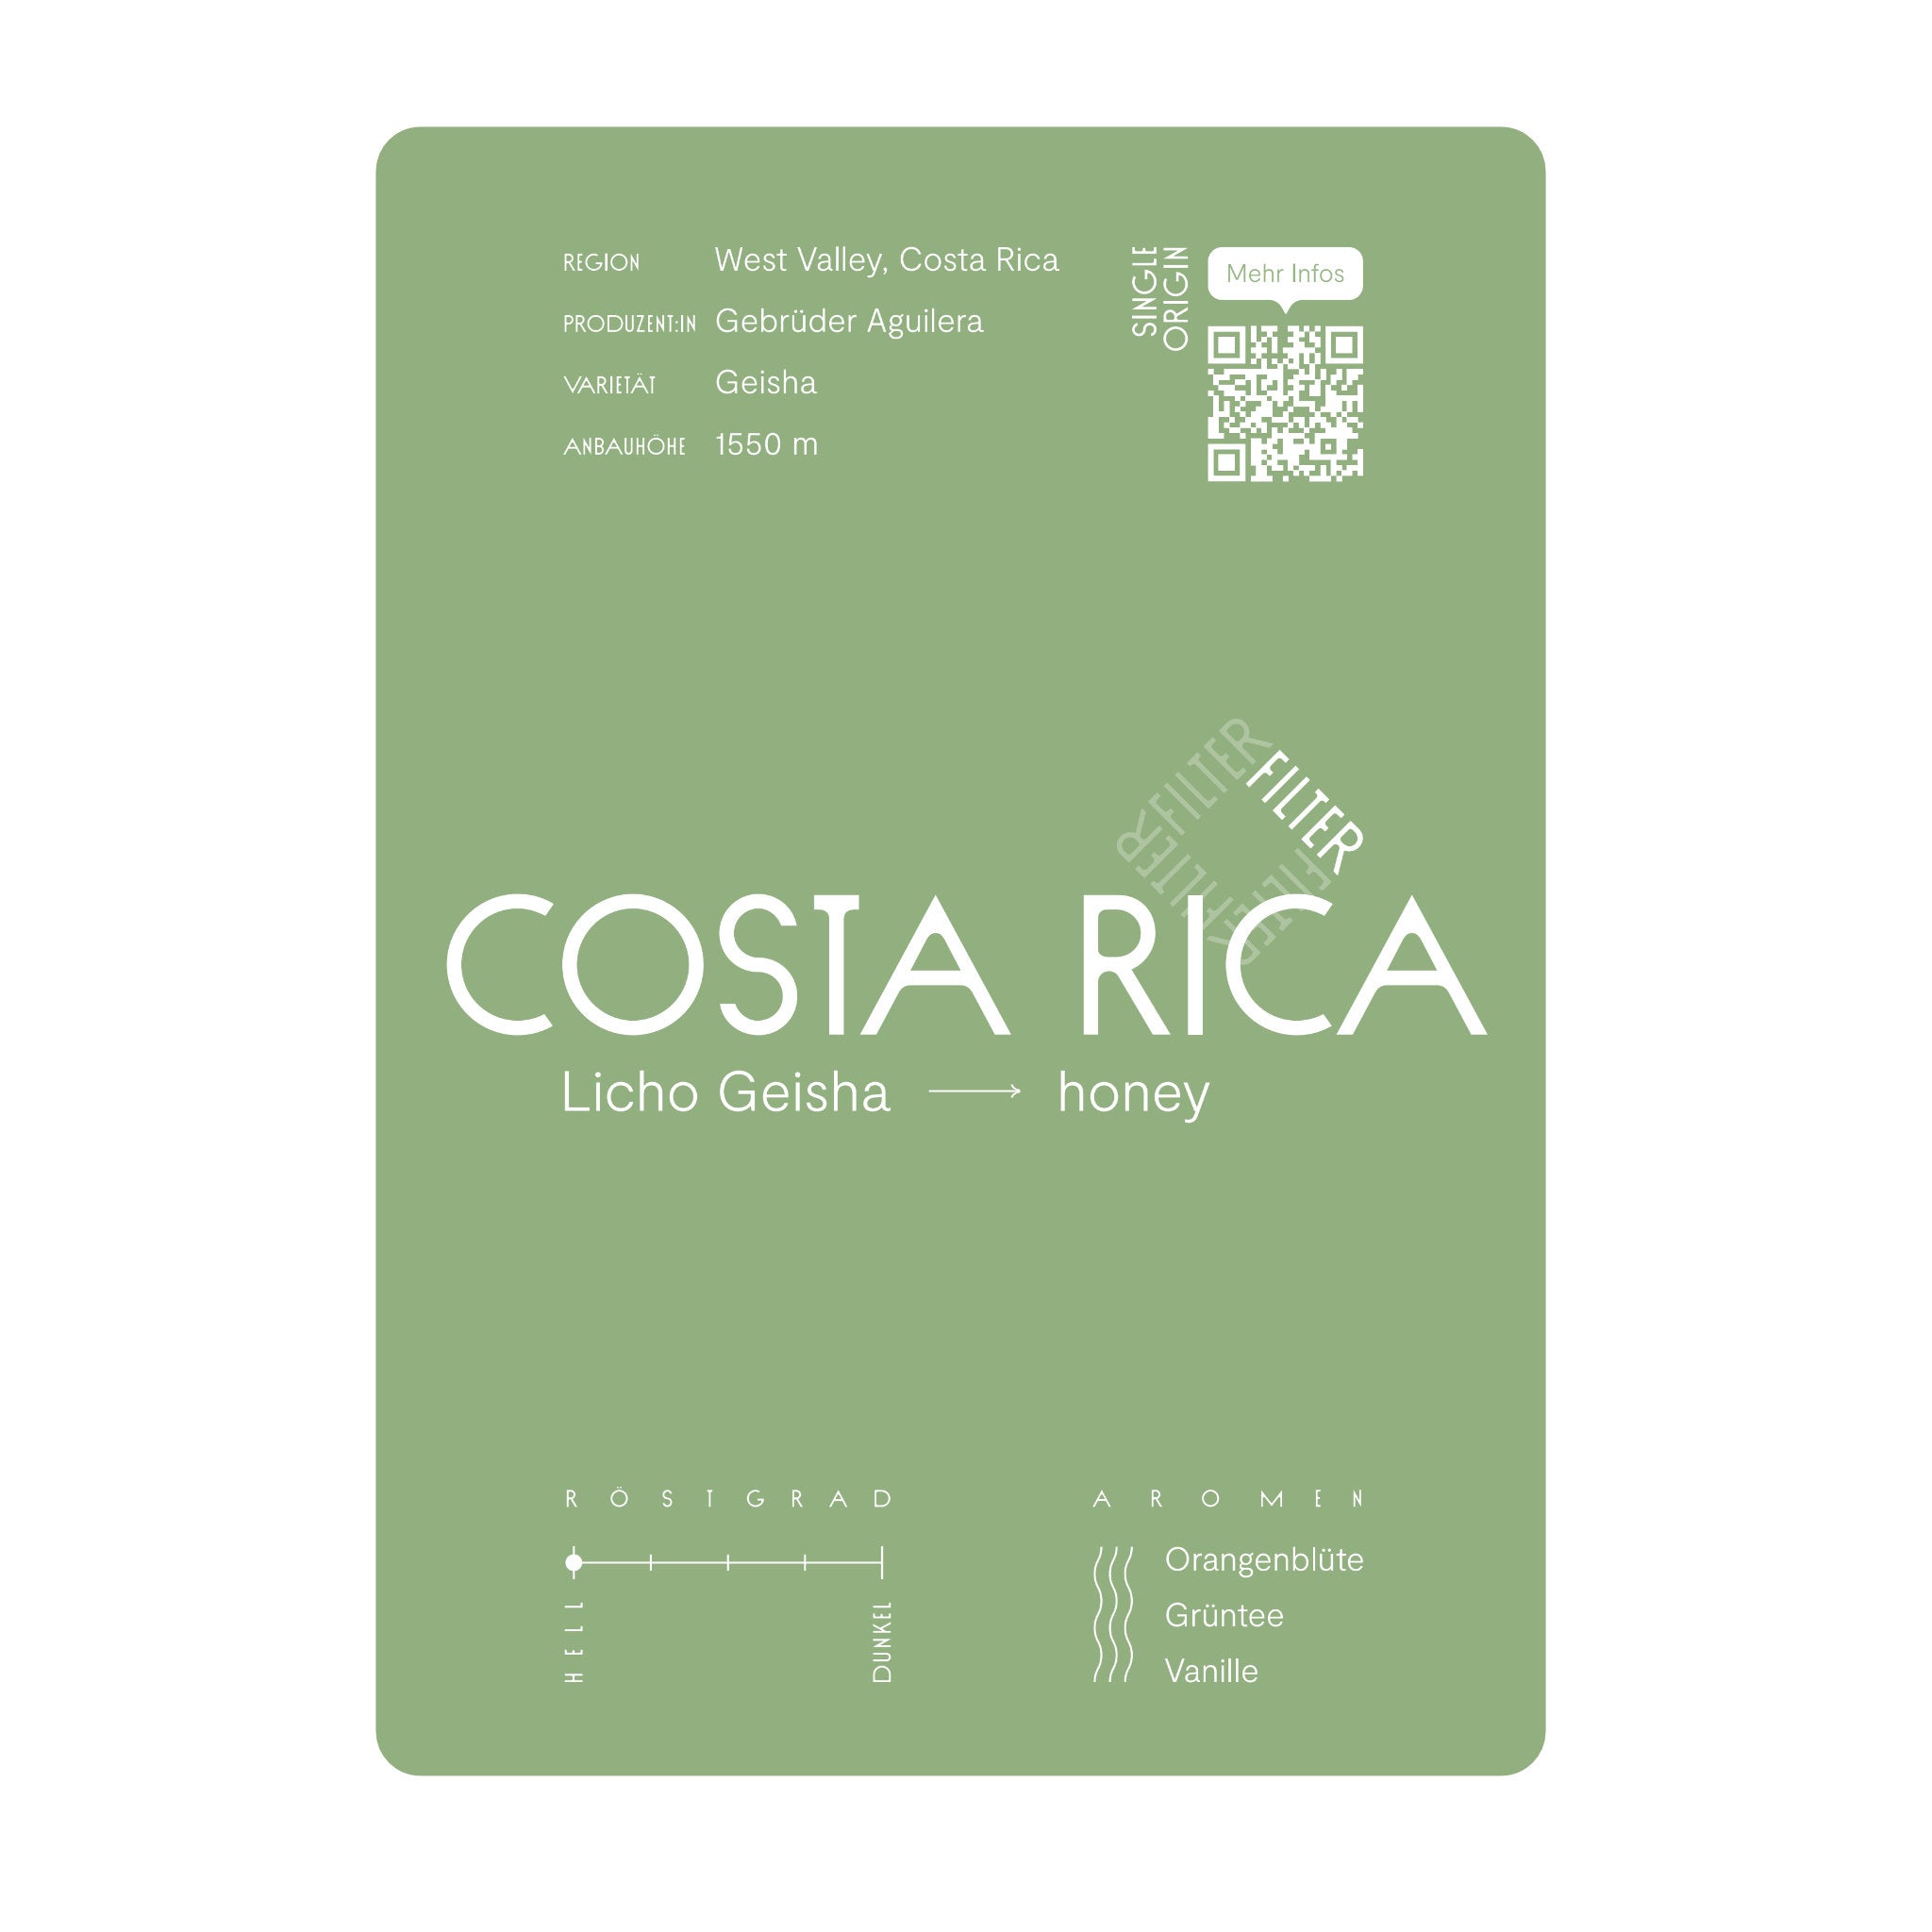 Infokarte Costa Rica Licho Geisha. Aufbereitet nach dem Honey-Verfahren. Schmeckt nach Orangenblüte, Grüntee und Vanille. Heller Röstgrad.